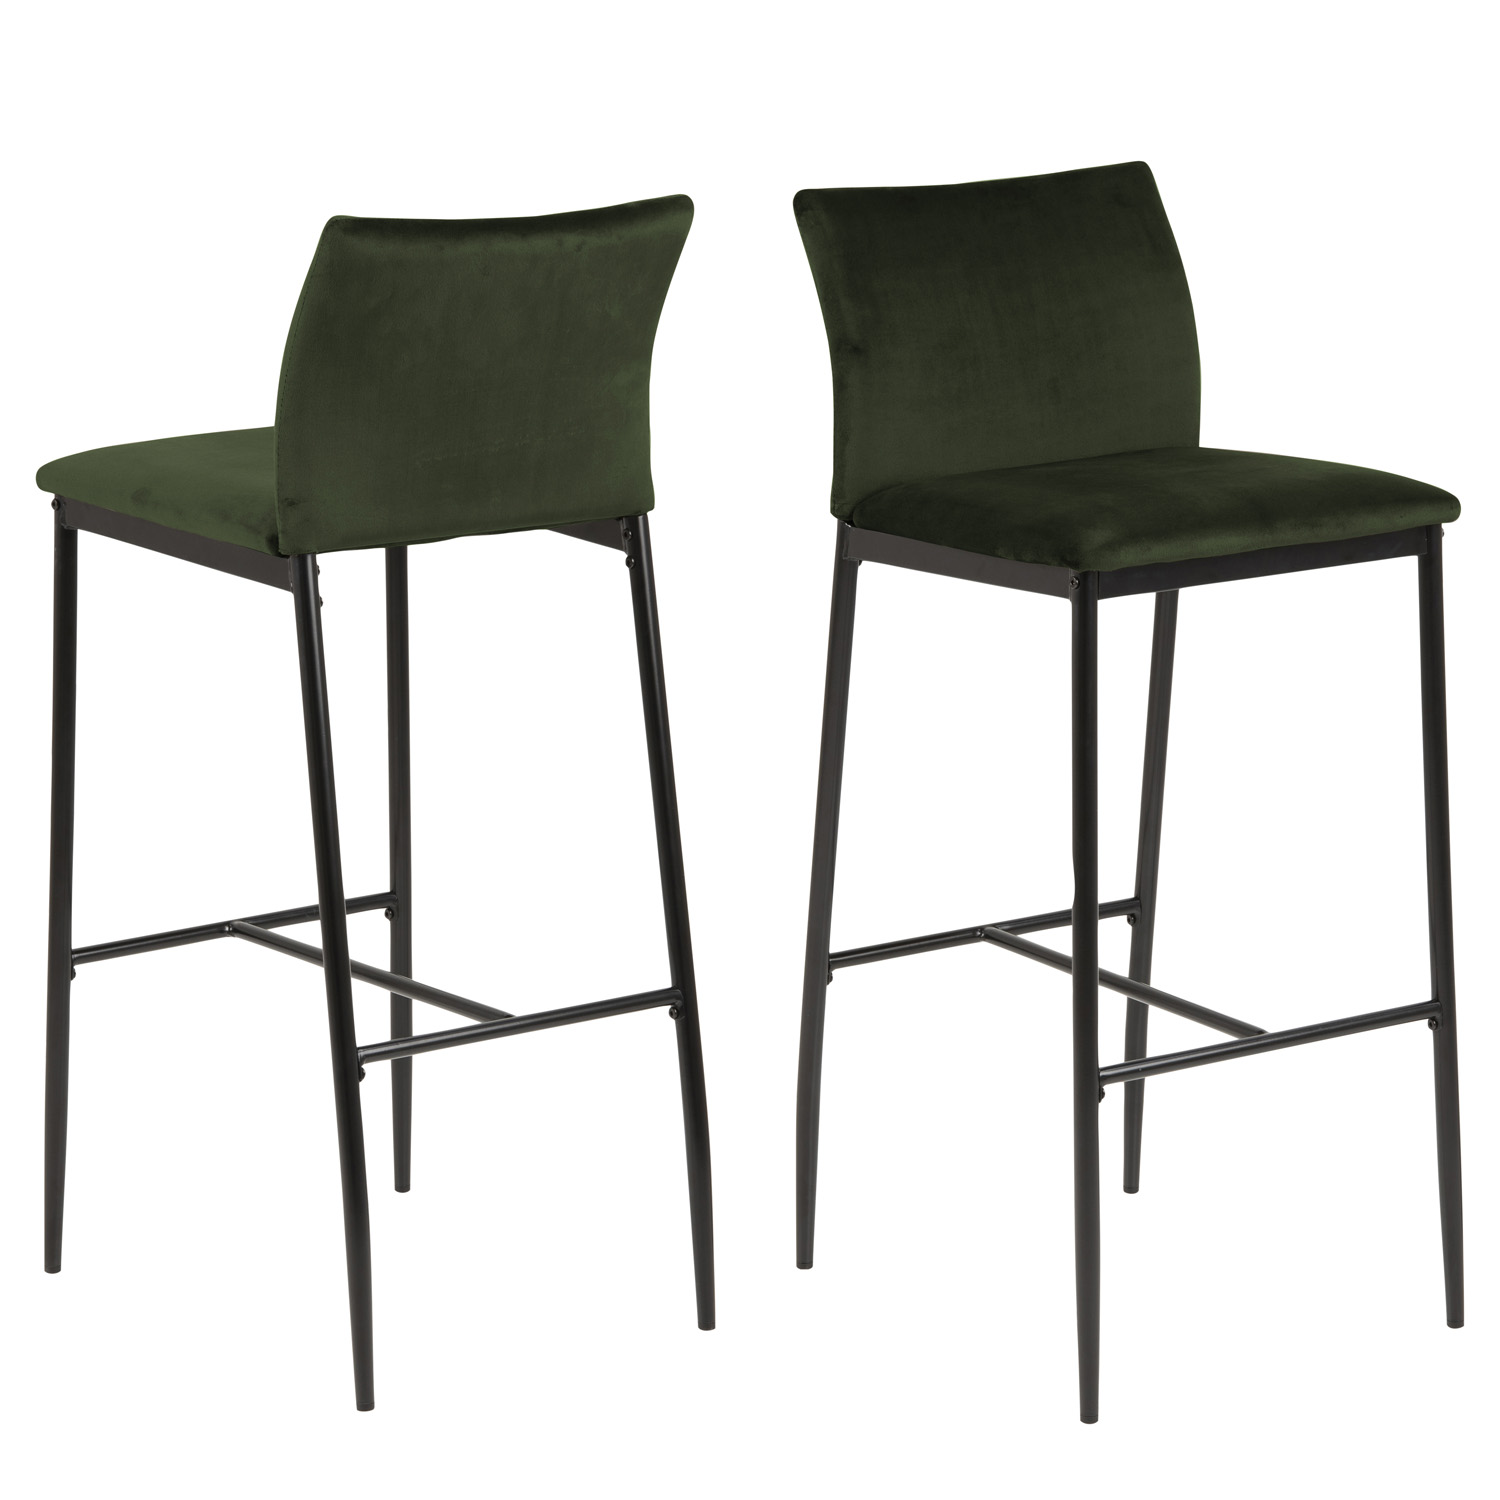 ACT NORDIC Demina barstol, m. ryglæn og fodstøtte - olivengrøn polyester og sort metal